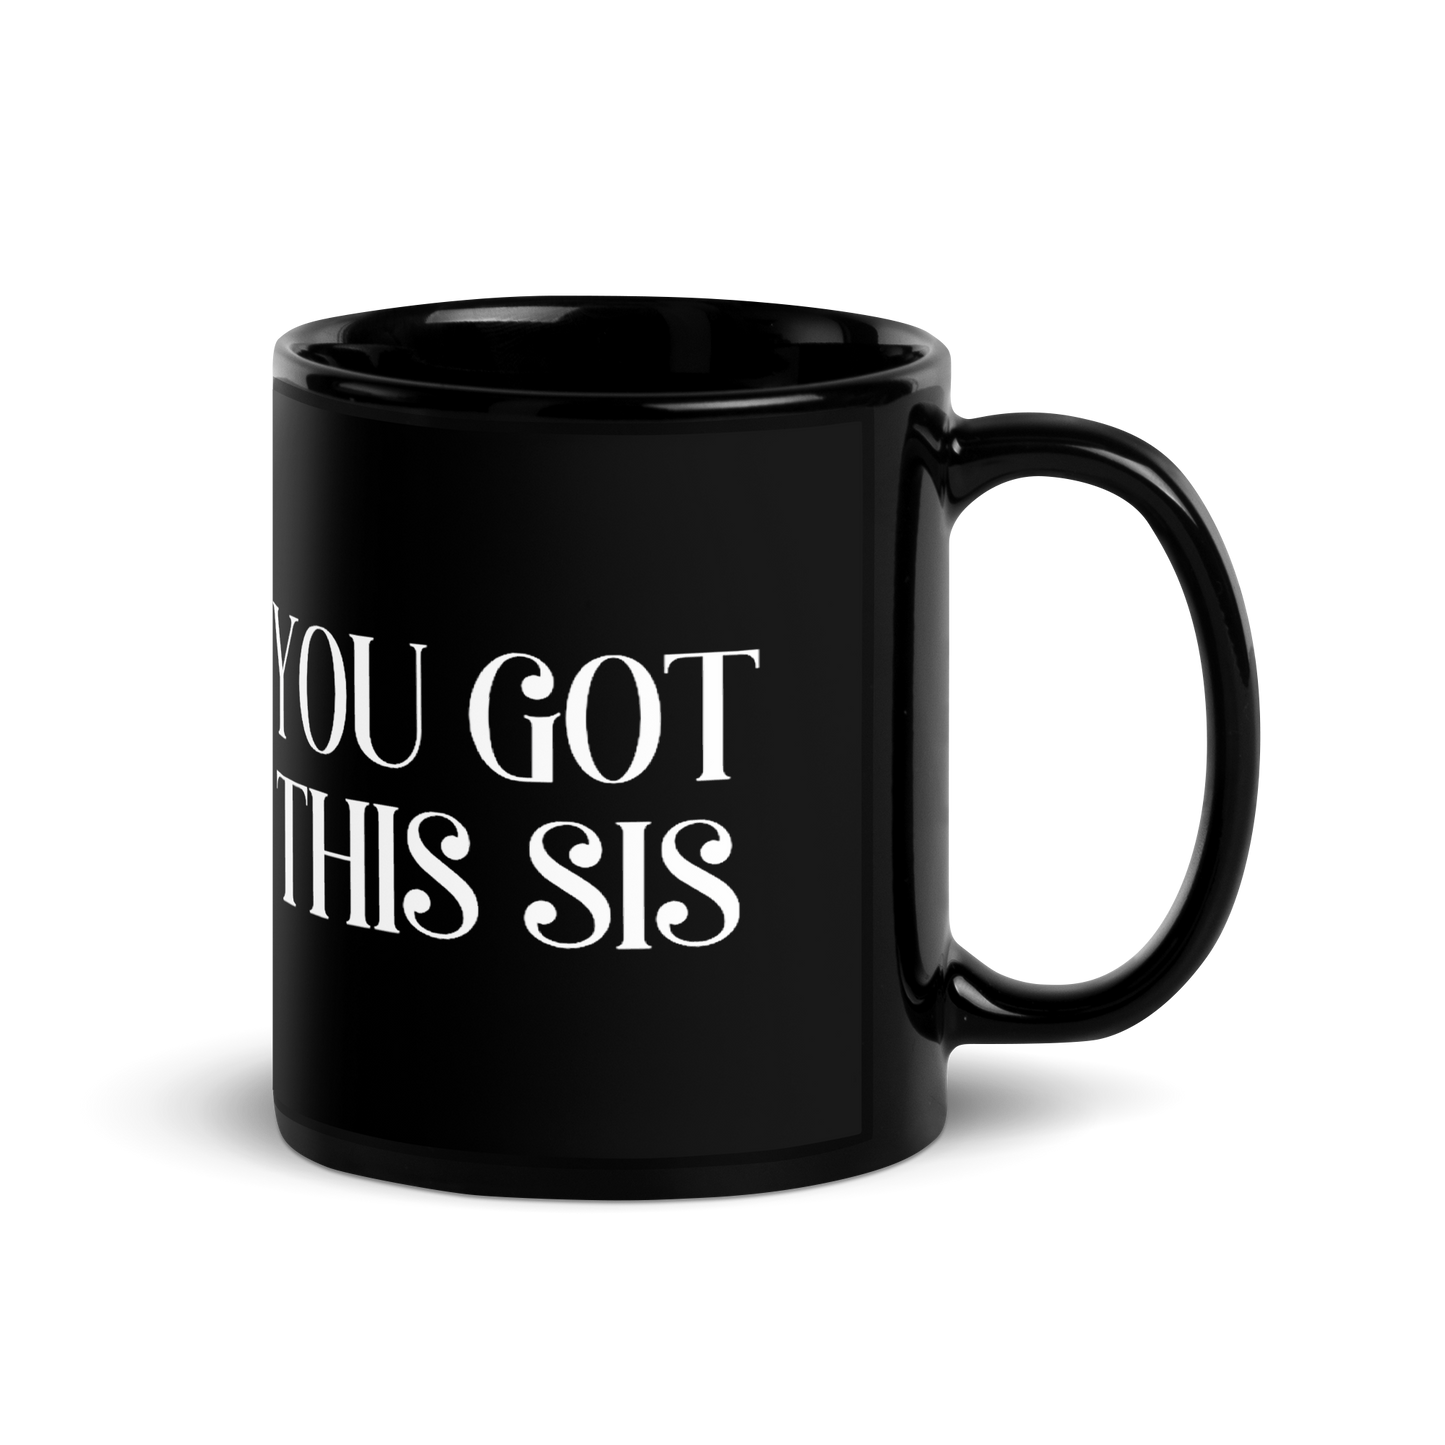 You Got This Sis Mug